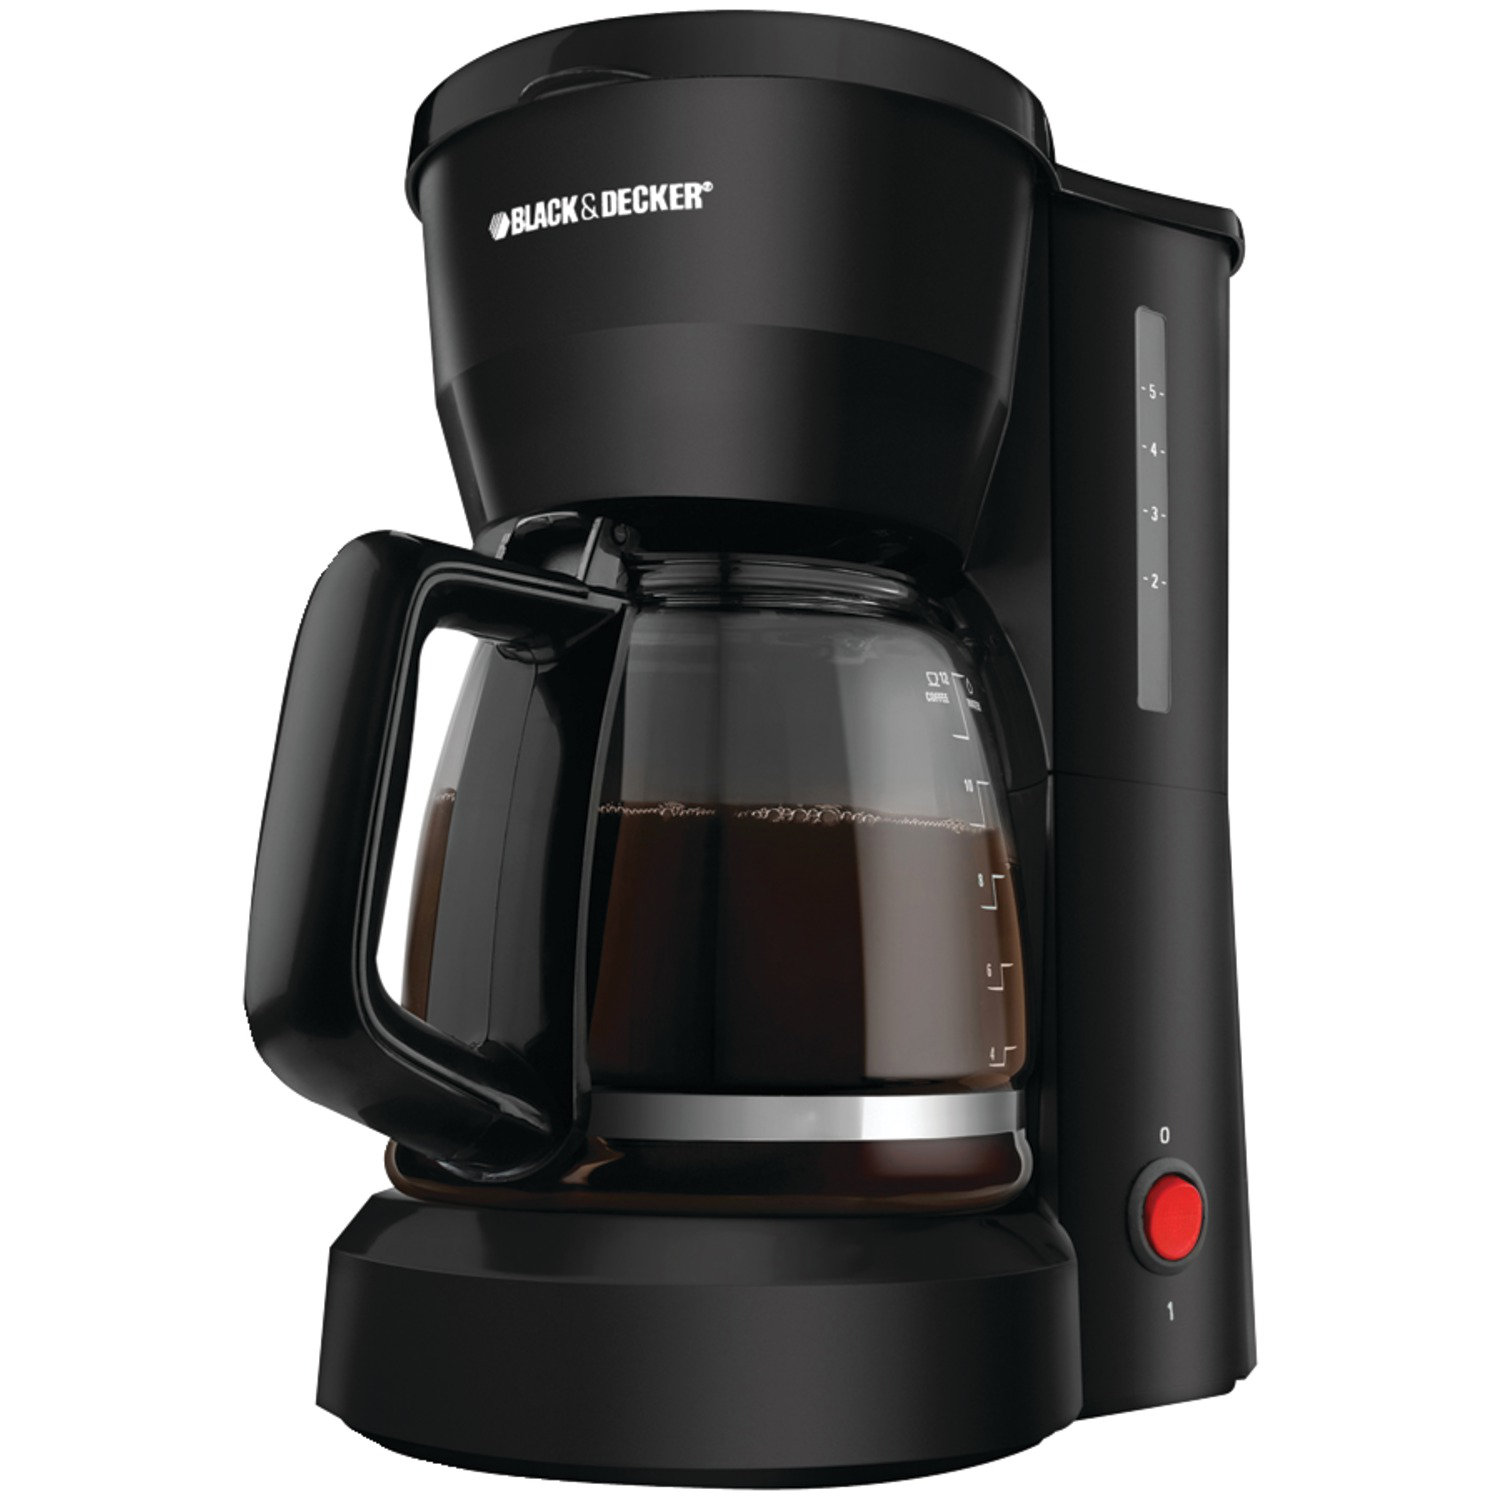 https://assets.wfcdn.com/im/23488258/compr-r85/2330/23306572/black-decker-5-cup-decker-coffee-maker.jpg